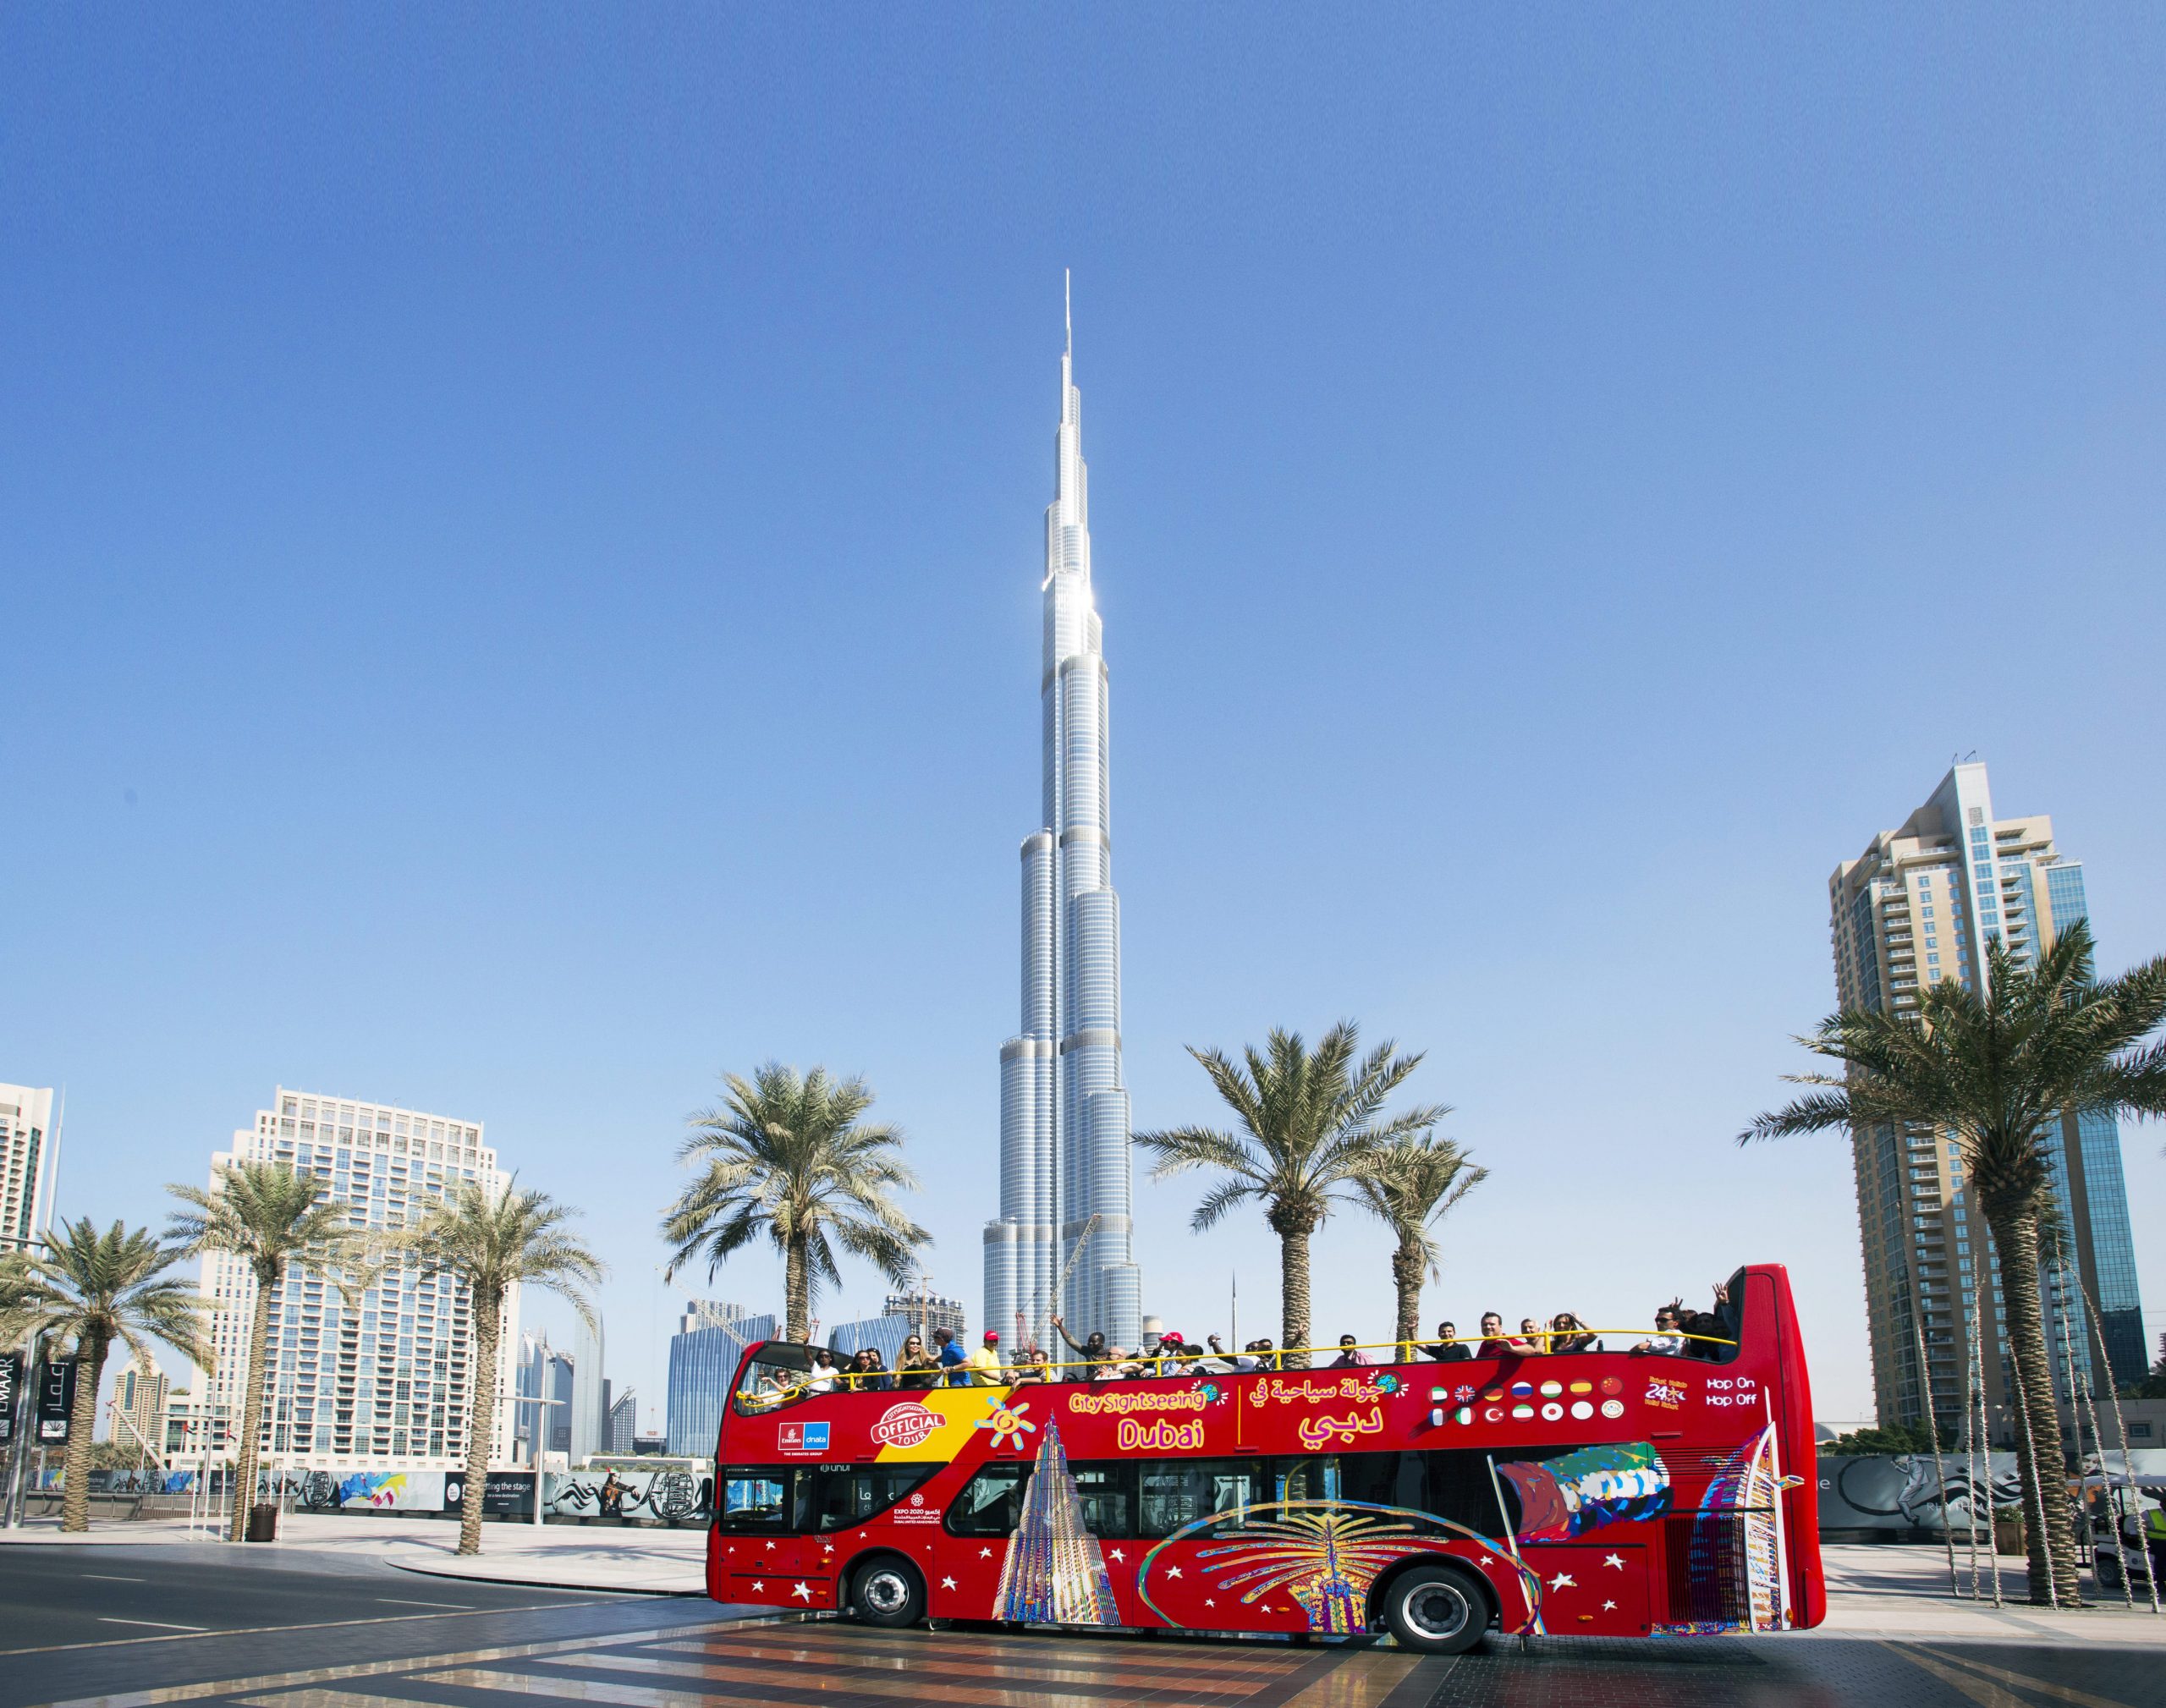 Bus turístico "City Sightseeing Hop-On Hop-Off", Dubái